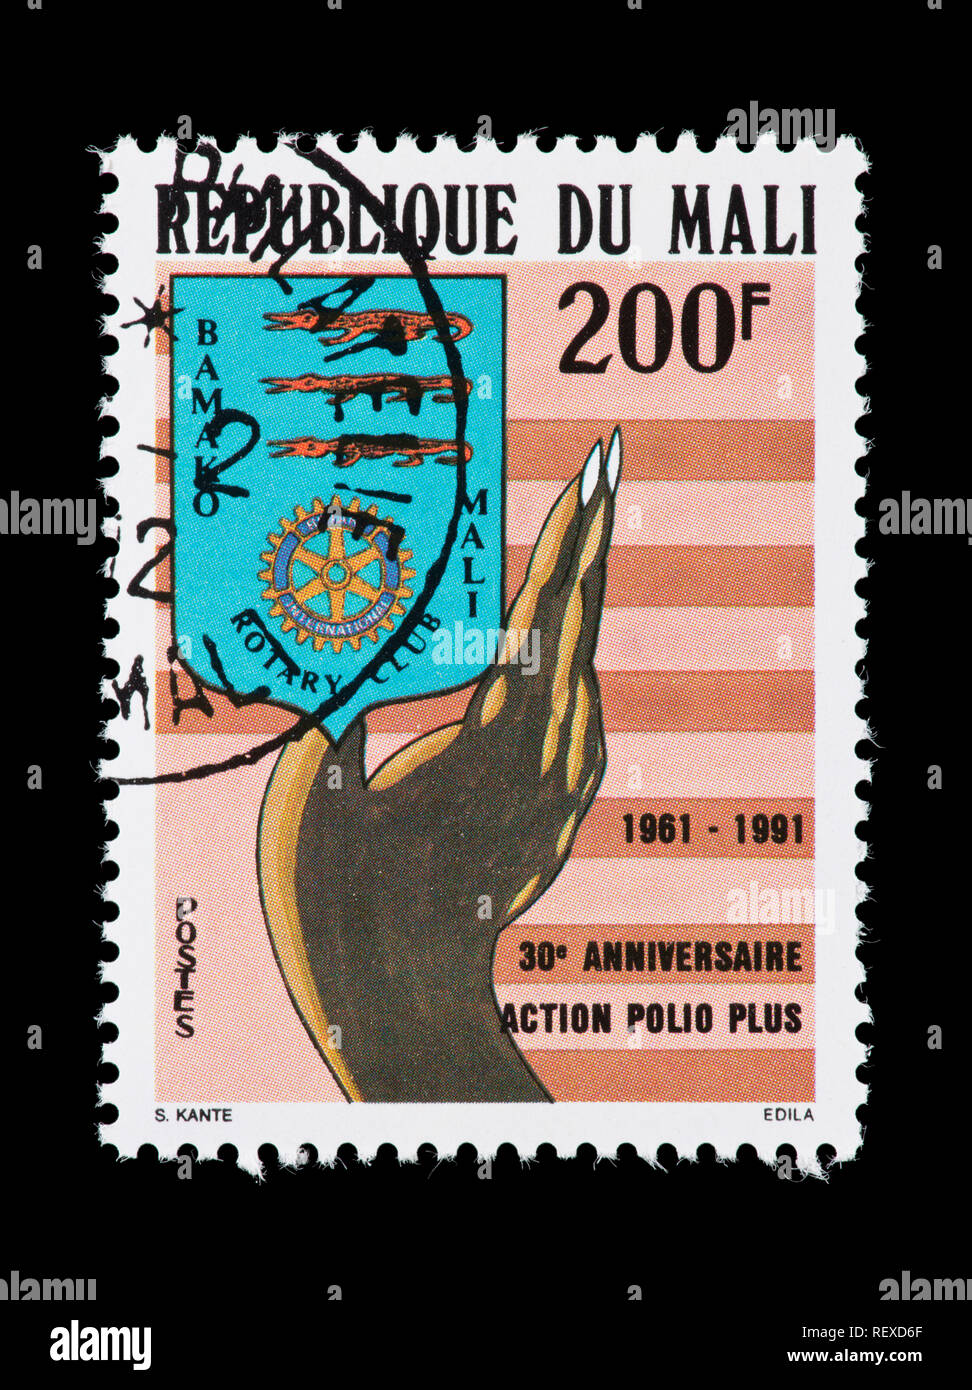 Briefmarke aus Mali, die im Rahmen des 30-jährigen Bestehens des Rotary Club Bemühung gegen Polio. Stockfoto